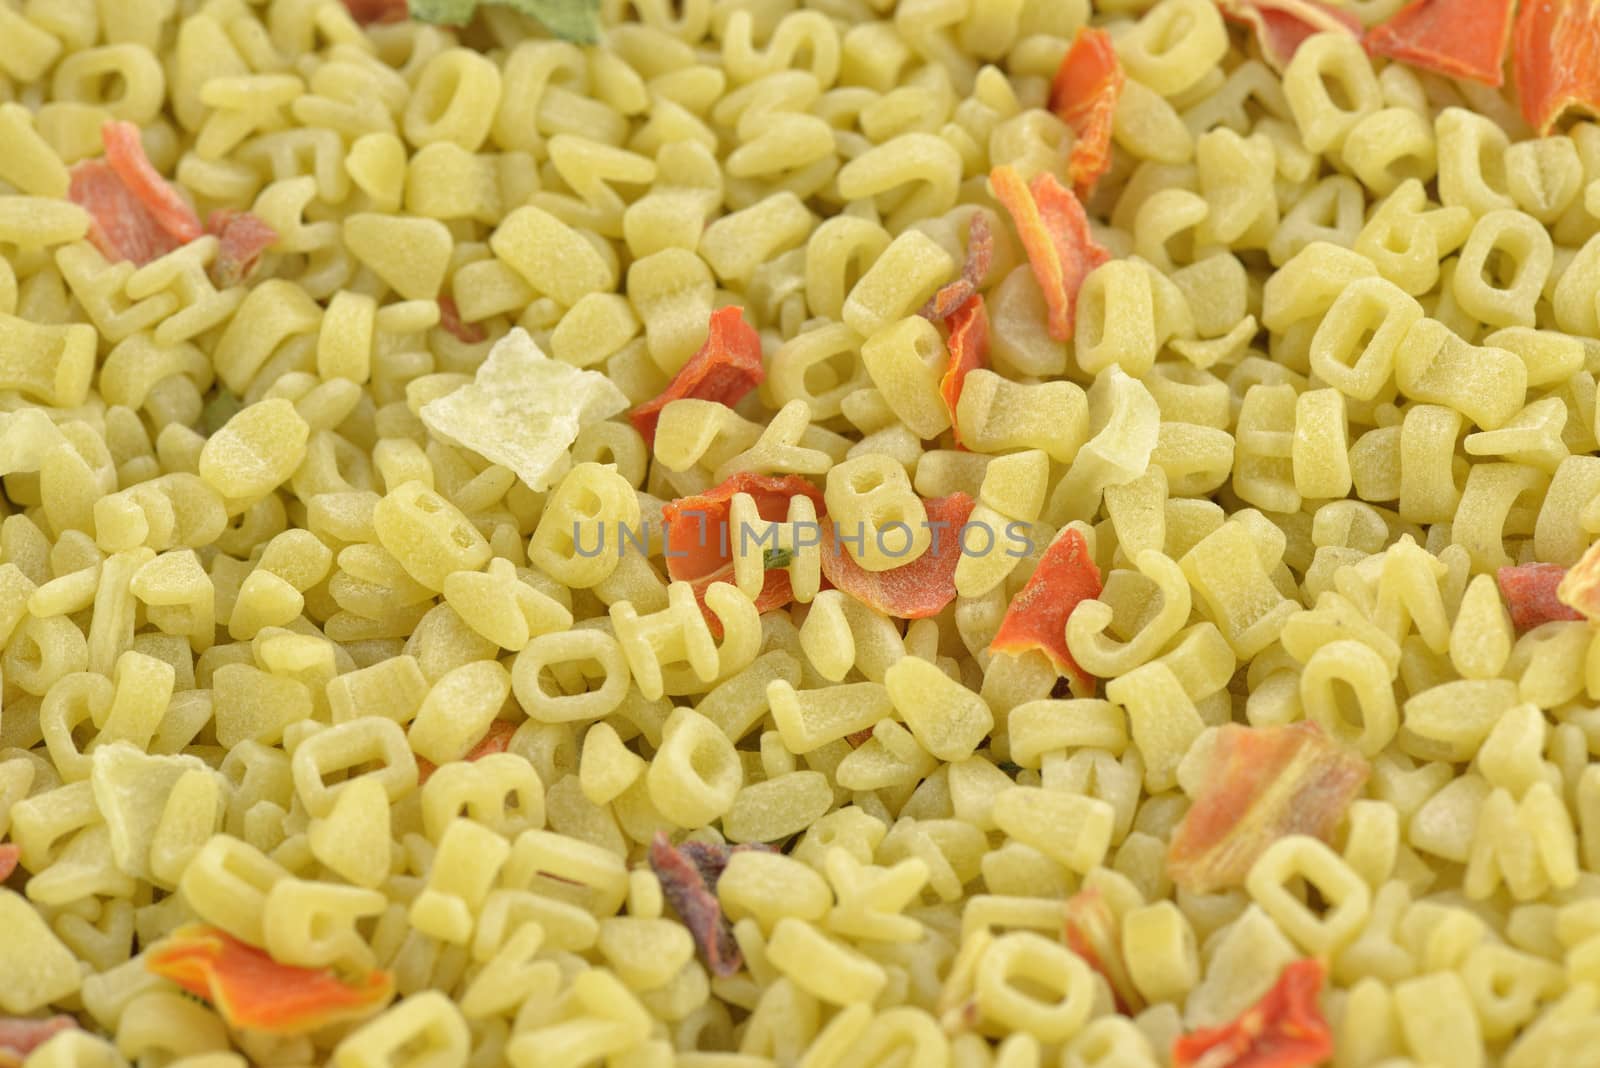 Alphabet pasta by Hbak